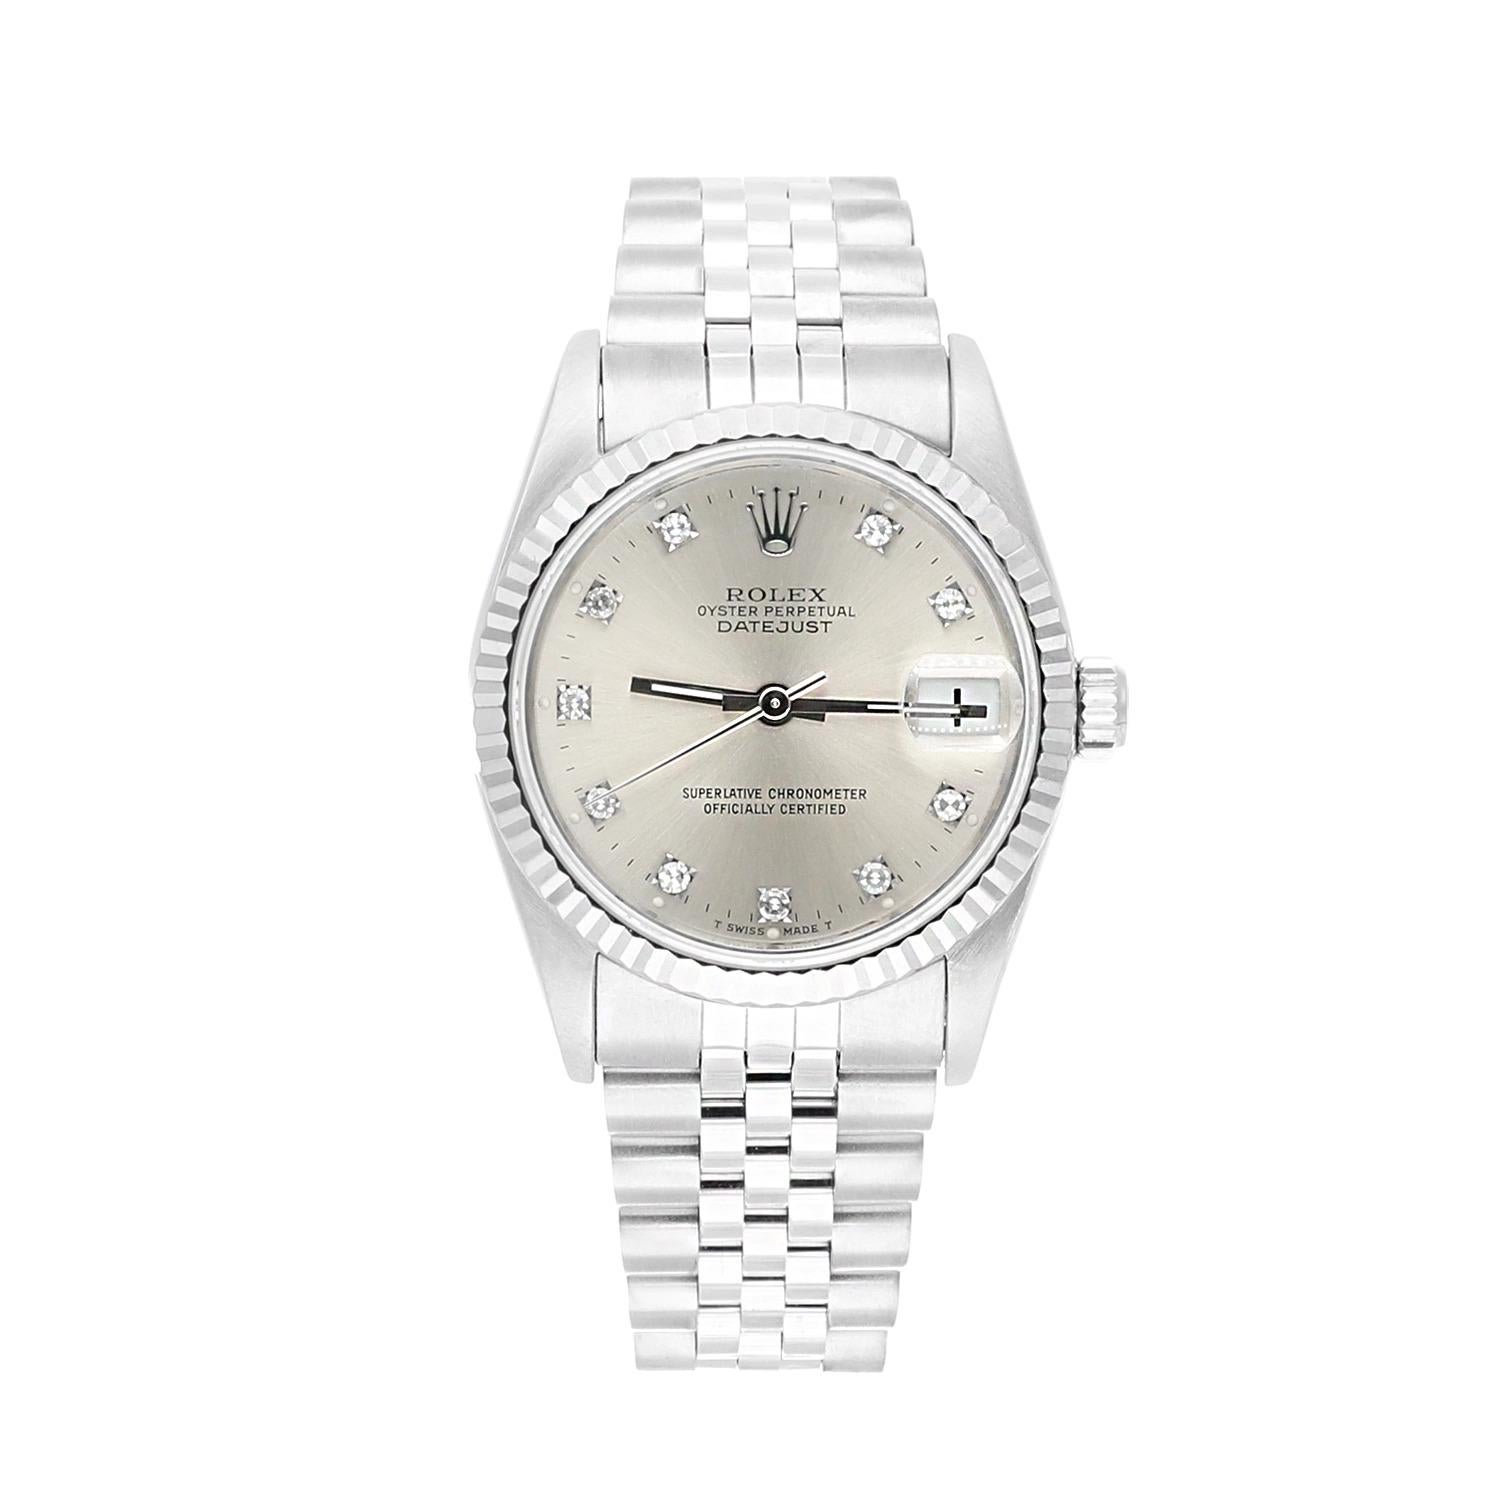 Rolex Datejust 31mm Silver Diamond Dial Stainless Steel Watch White Gold Bezel, N Serial.
Cette montre a été professionnellement polie, révisée et est en excellent état général. Il n'y a absolument aucune rayure ou imperfection visible. Authenticité